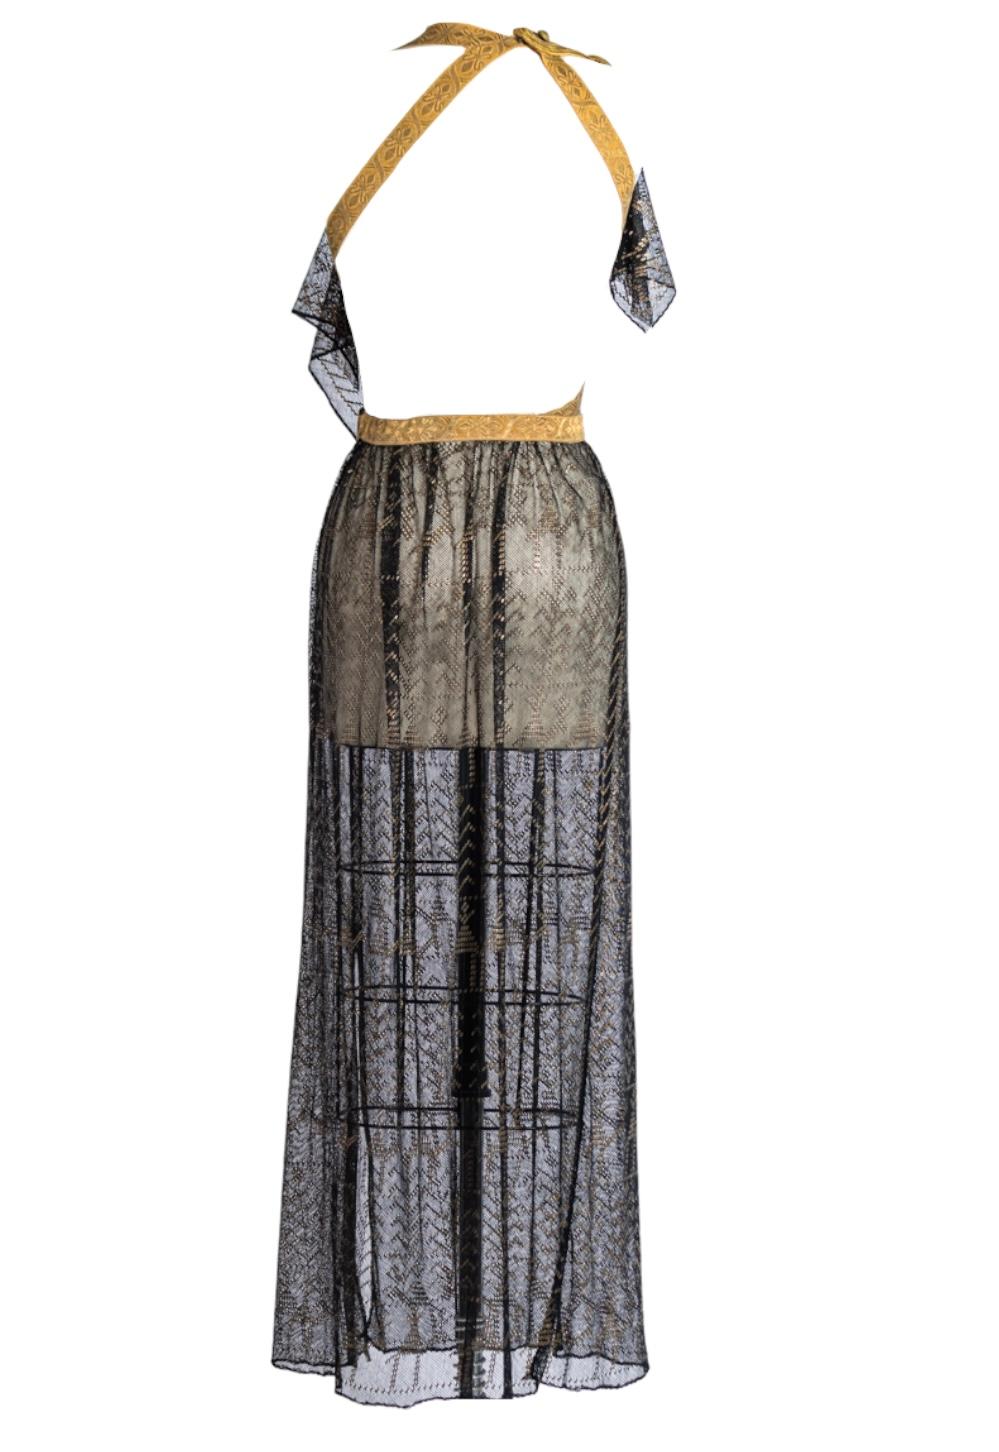 MORPHEW ATELIER Black & Gold Cotton Net Antique Egyptian Assuit Gown With Milit For Sale 2